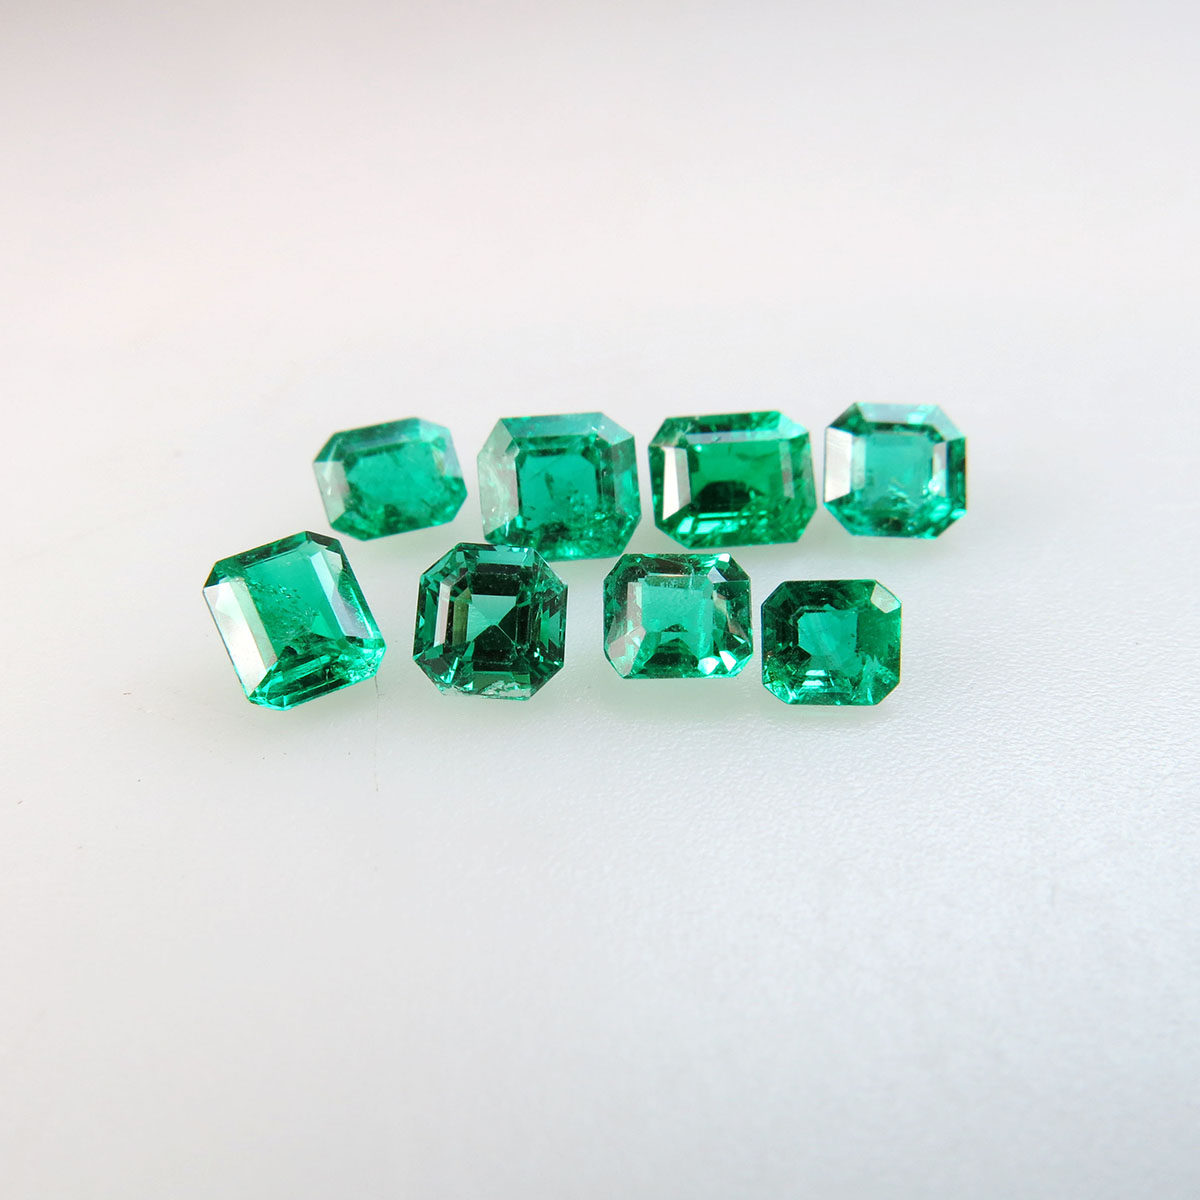 8 Emerald Cut Emeralds